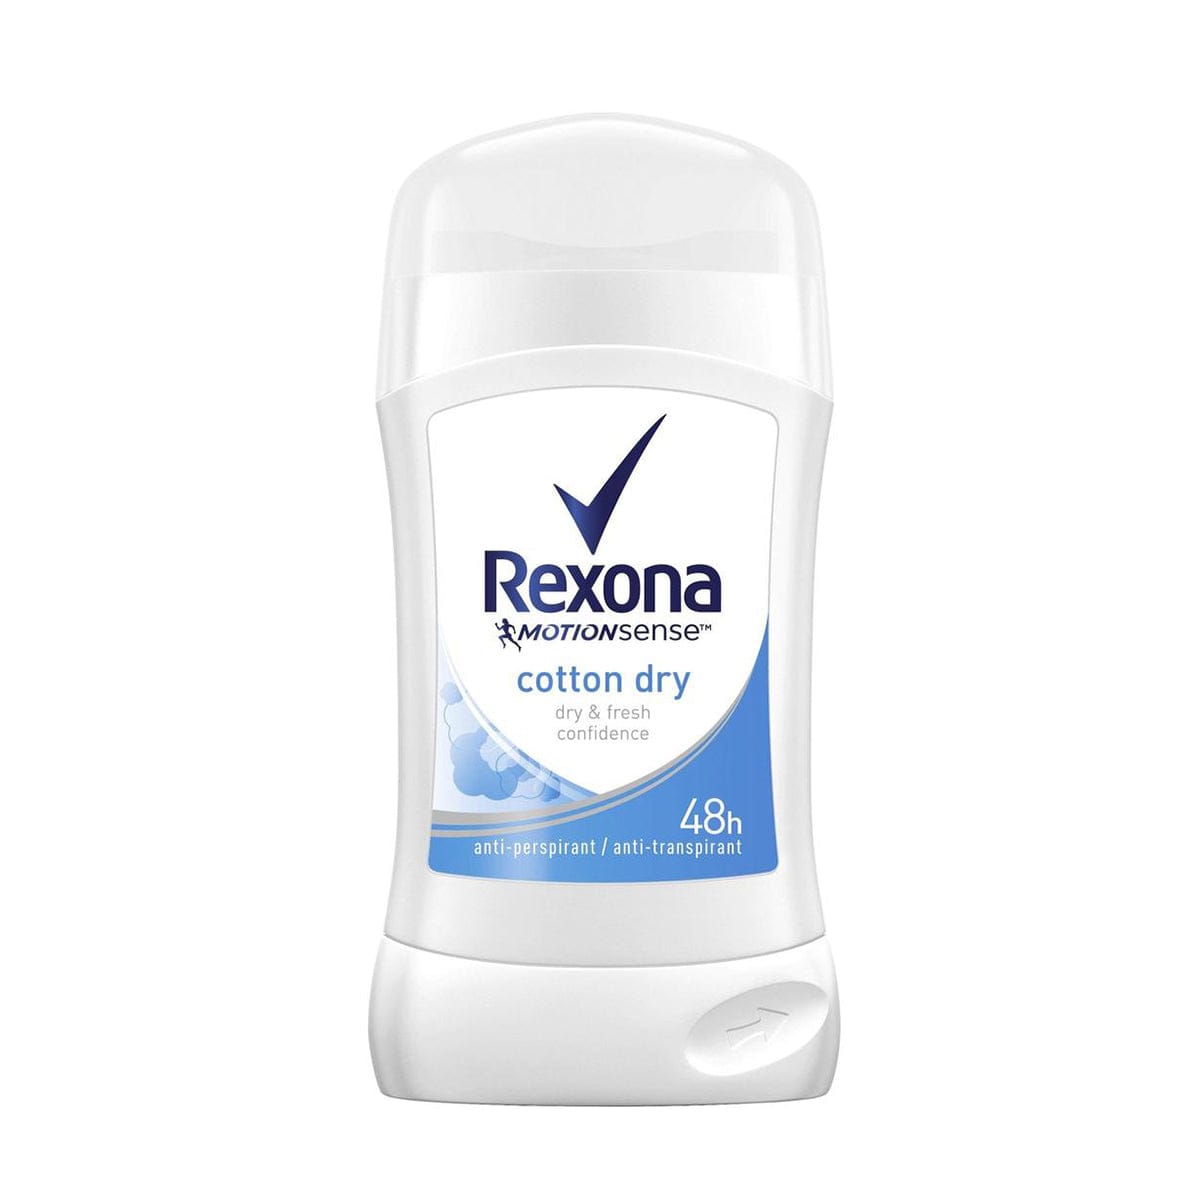 Rexona Cotton Dry Deodorant for Women